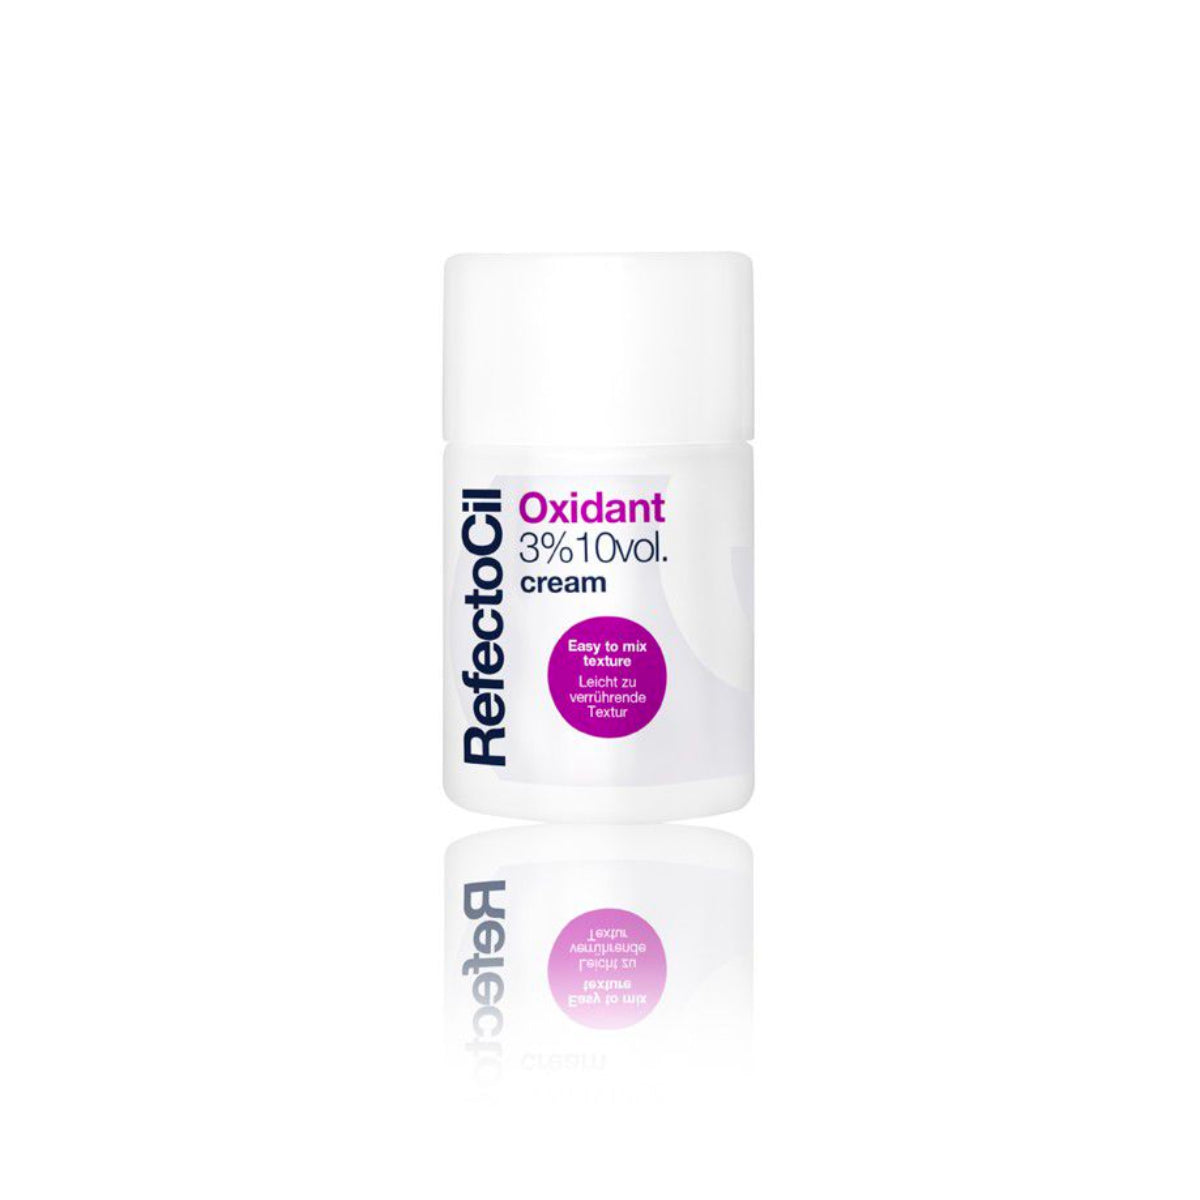 RefectoCil Oxidant Cream 100ml